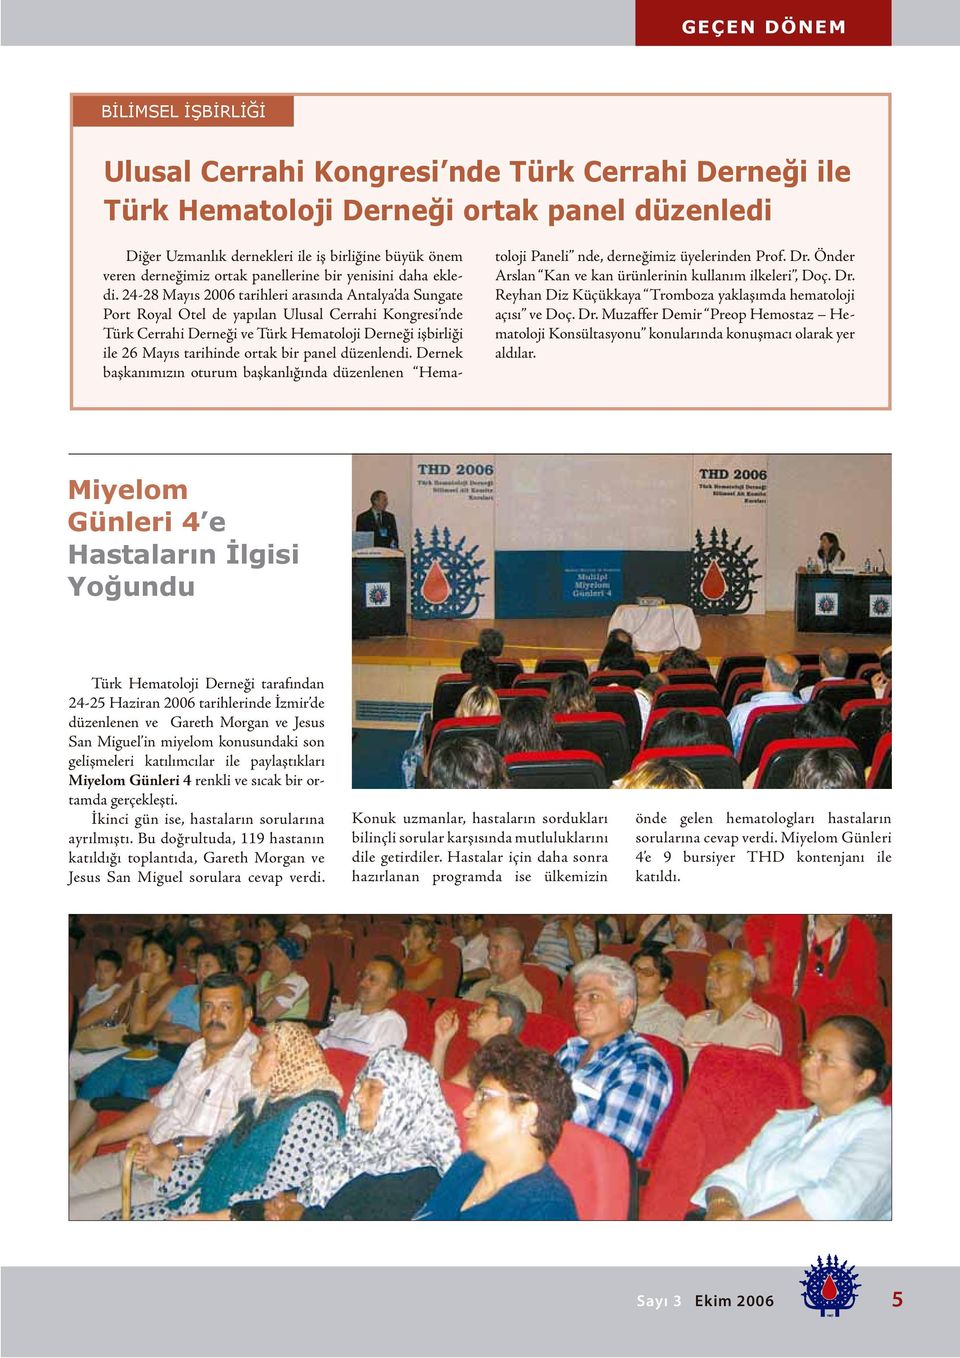 24-28 Mayıs 2006 tarihleri arasında Antalya da Sungate Port Royal Otel de yapılan Ulusal Cerrahi Kongresi nde Türk Cerrahi Derneği ve Türk Hematoloji Derneği işbirliği ile 26 Mayıs tarihinde ortak